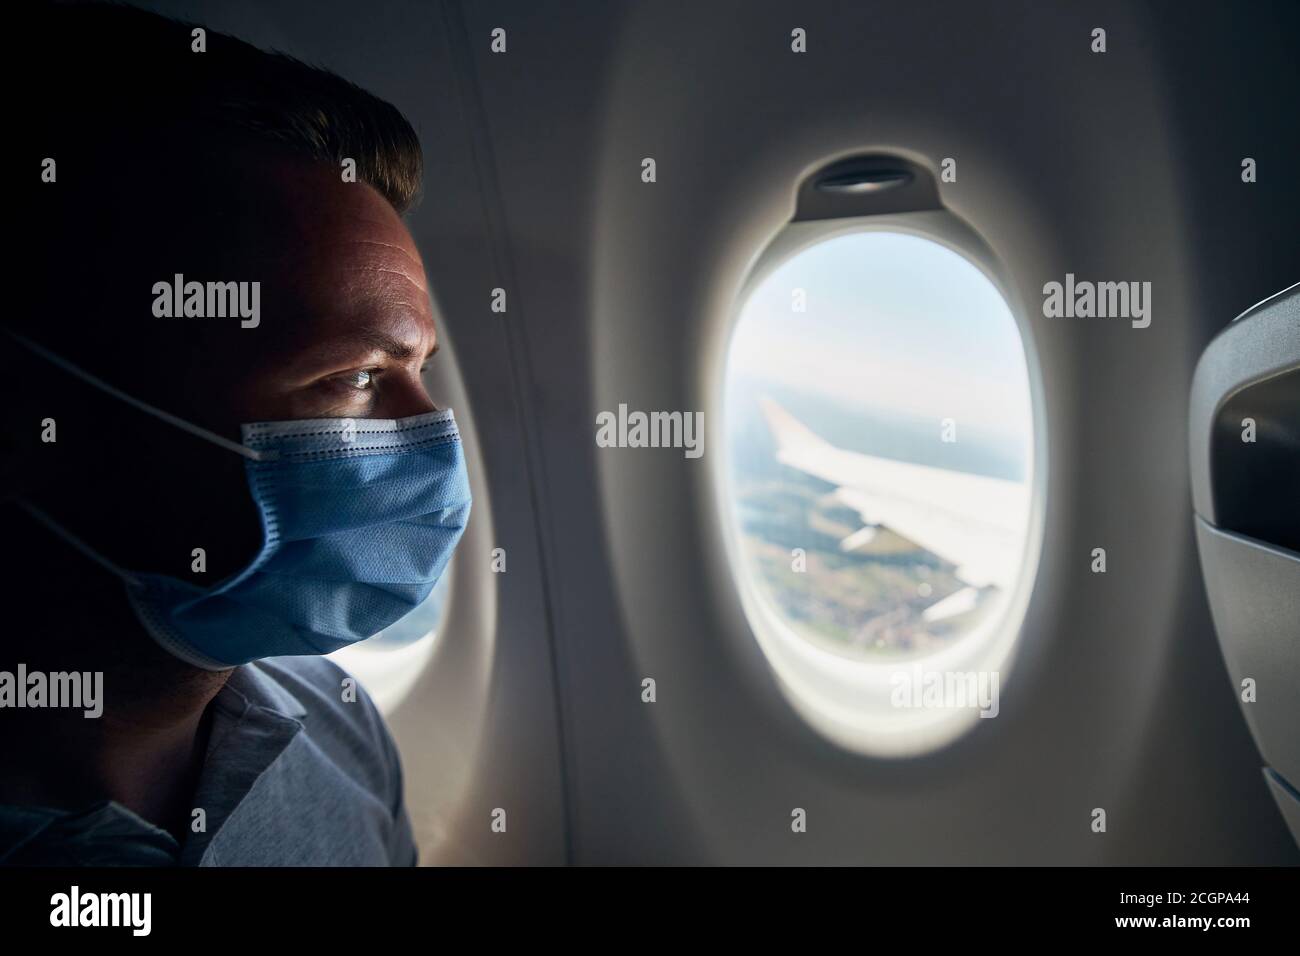 Mann trägt Gesichtsmaske im Flugzeug während des Fluges. Themen neue normale, Coronavirus und persönlichen Schutz. Stockfoto